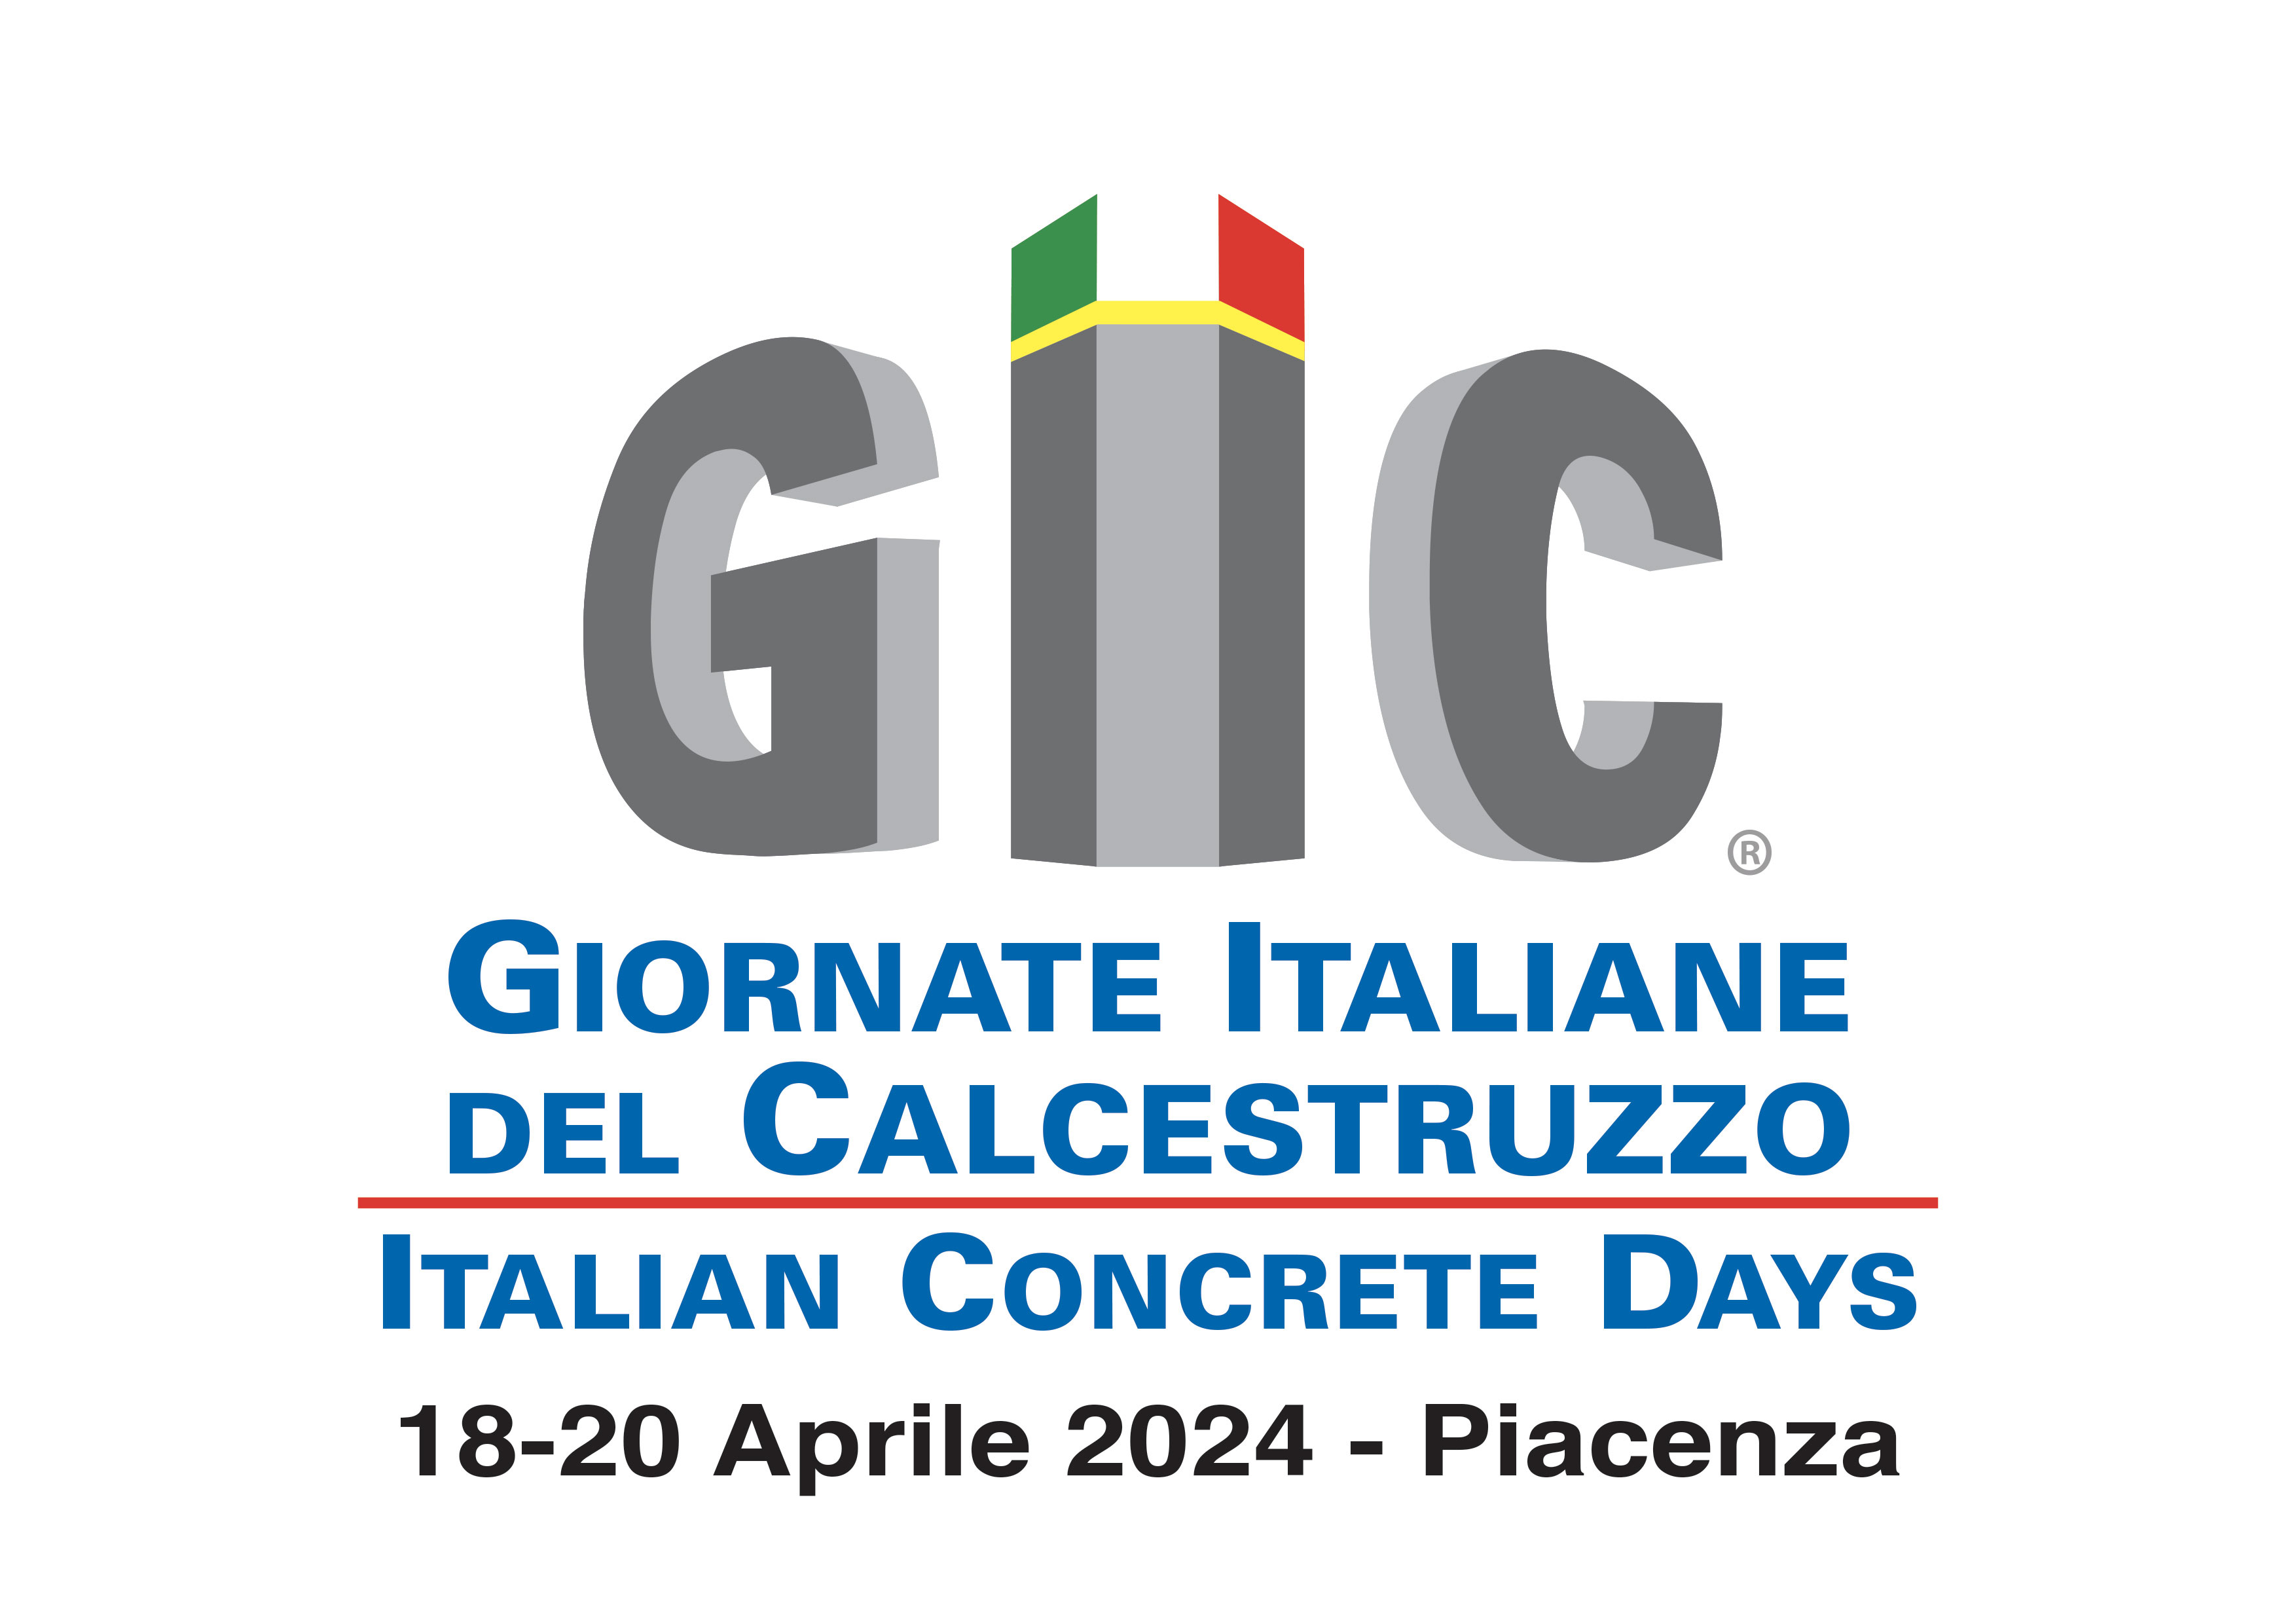 GIC-GIORNATE ITALIANE DEL CALCESTRUZZO/ITALIAN CONCRETE DAYS